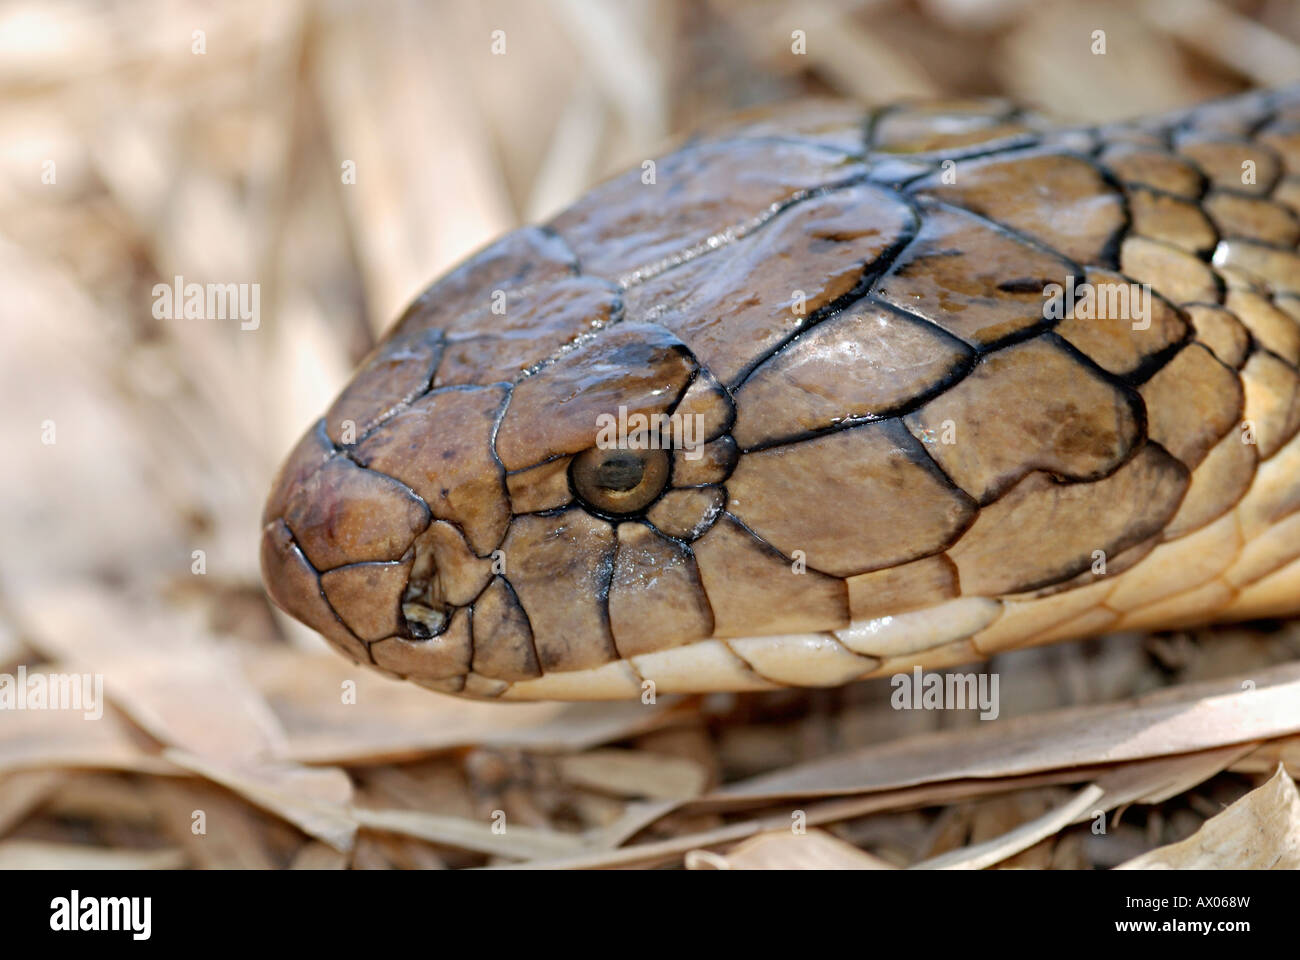 COBRA REALE. Ophiophagus hannah. Rare velenosi. Più lunga del mondo di serpenti velenosi. Foto Stock